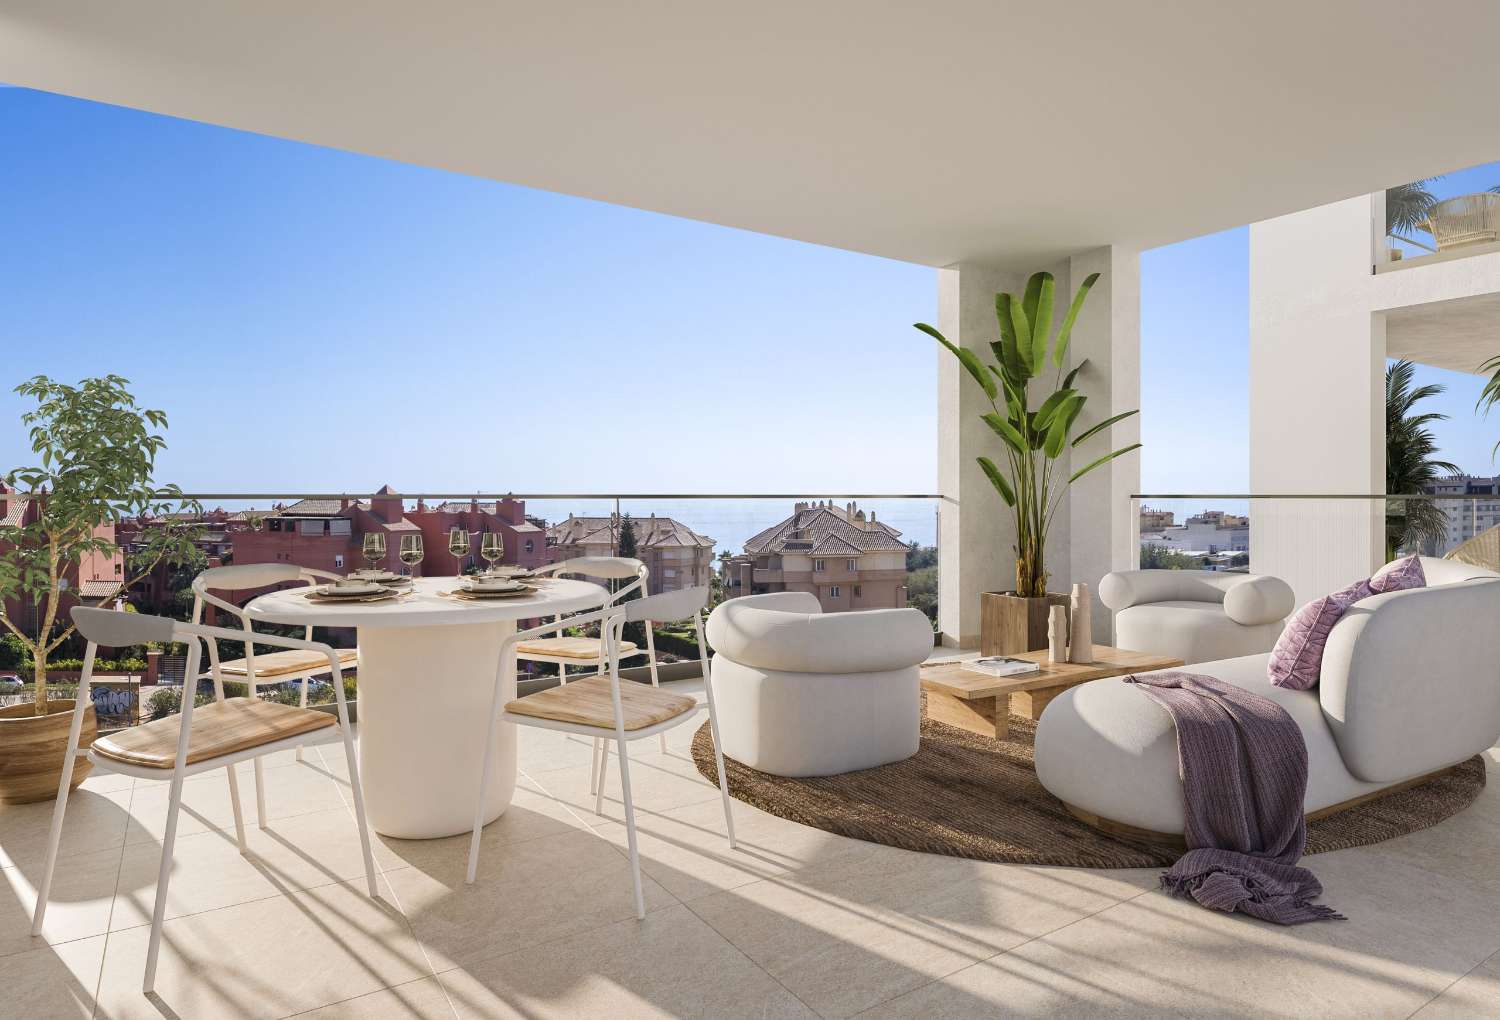 2 o 3 camere da letto, 2 bagni e terrazzo vista mare – da € 218.000